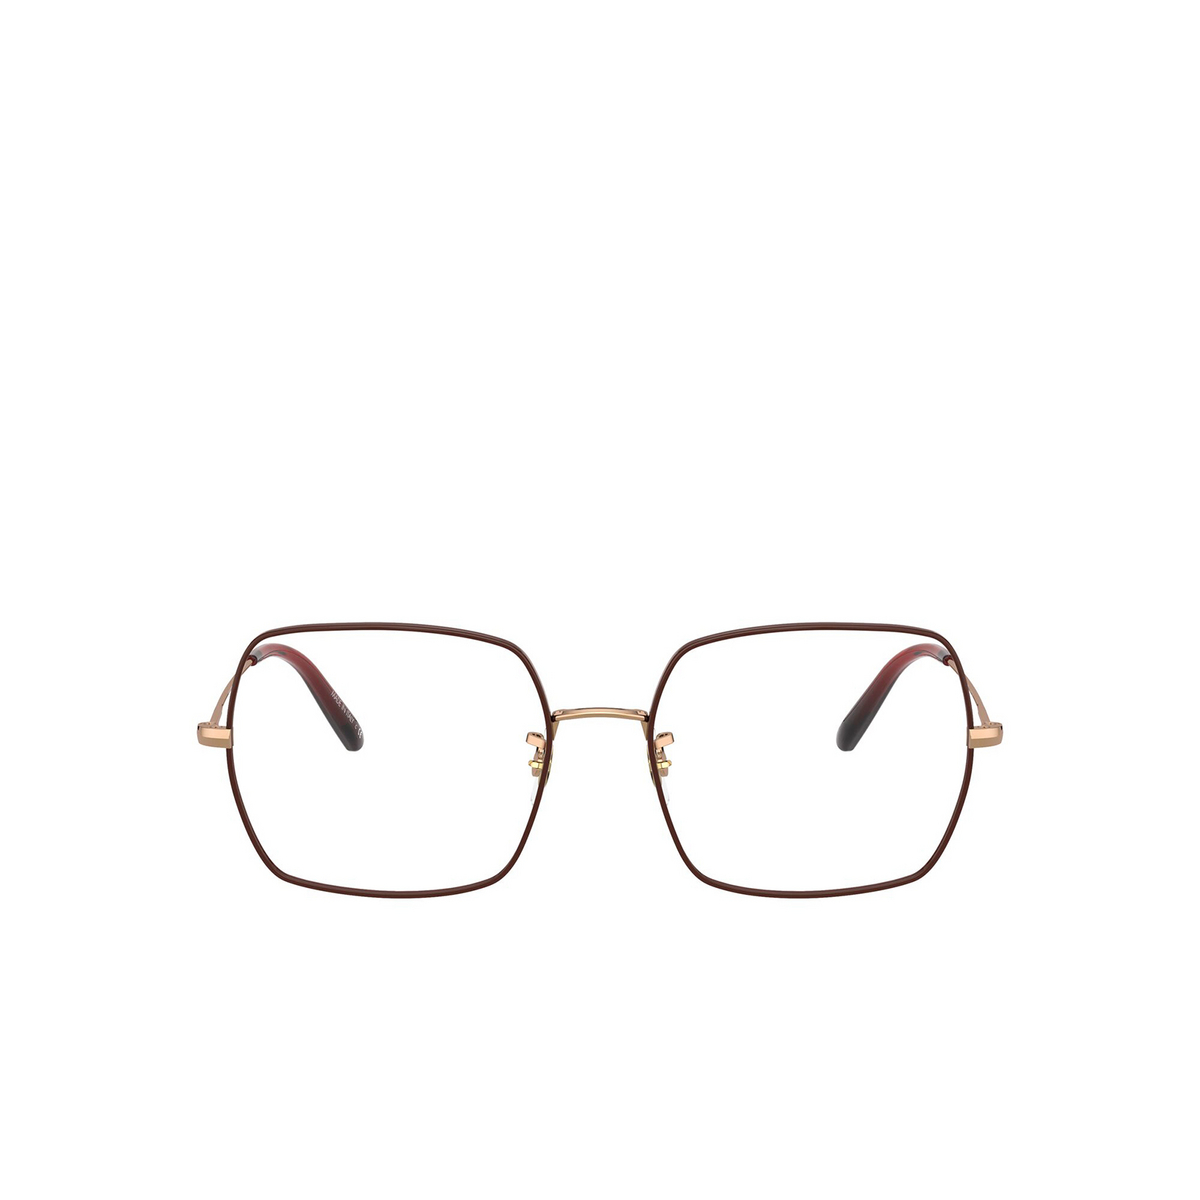 Oliver Peoples® Irregular Eyeglasses: Justyna OV1279 color Rose Gold / Burgundy 5037 - front view.